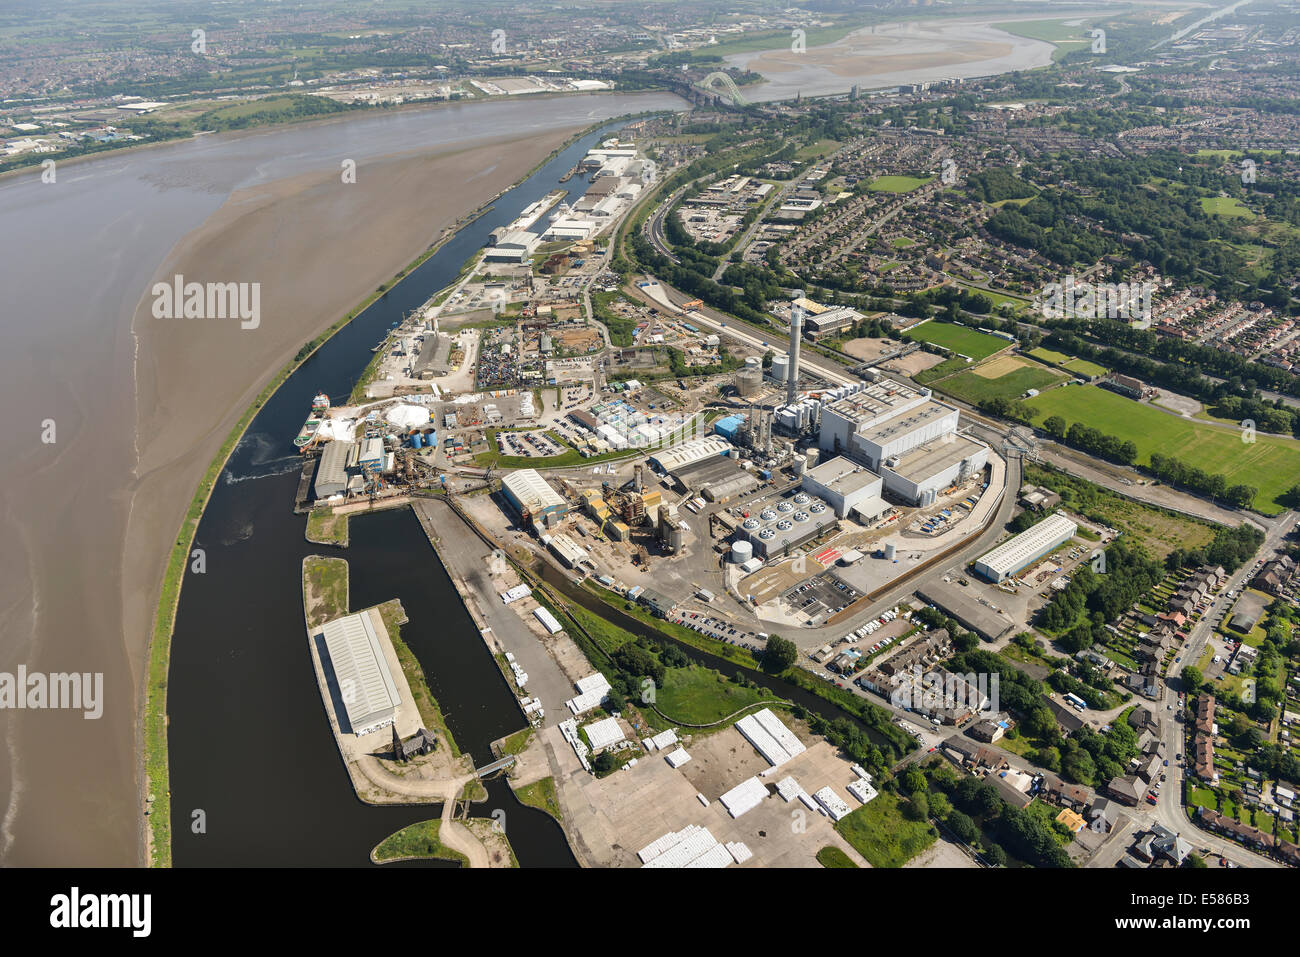 Muestra una vista aérea de Runcorn y Widnes, ciudades en Cheshire, Reino Unido a ambos lados del río Mersey. Foto de stock